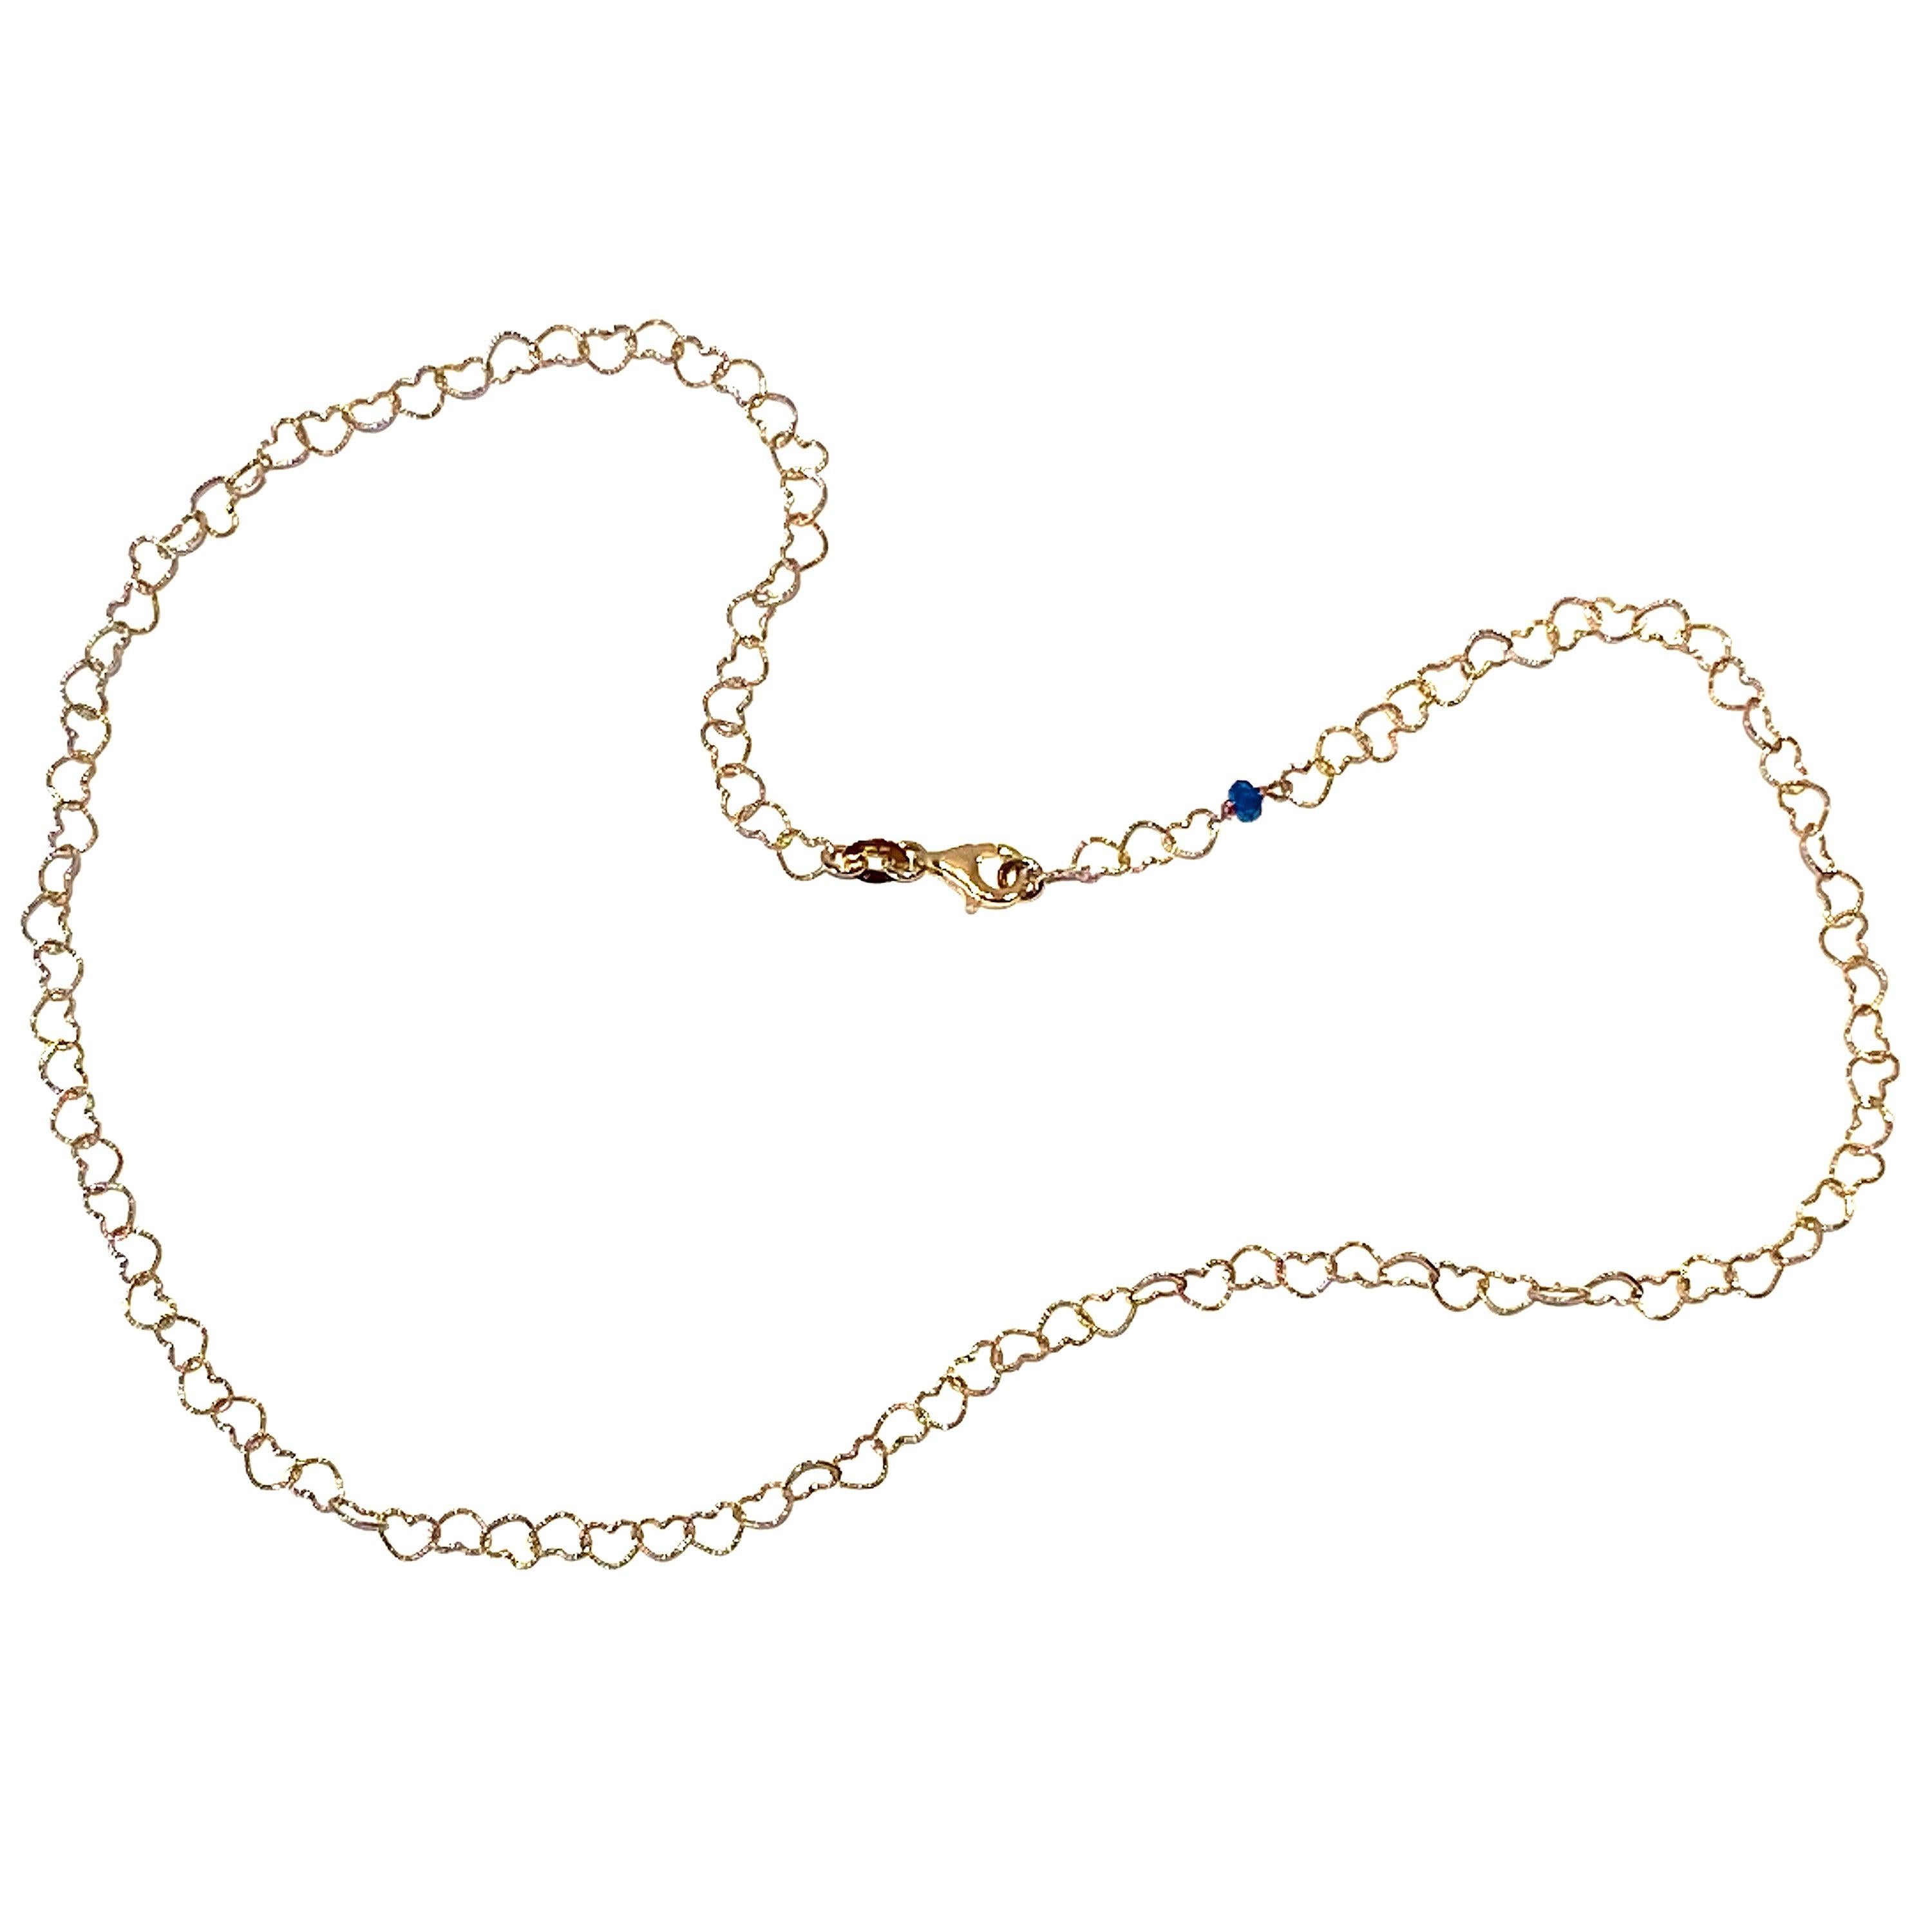 Romantic Style 18 Karat Yellow Gold 0.51 Karat Sapphire "Little Hearts" Necklace